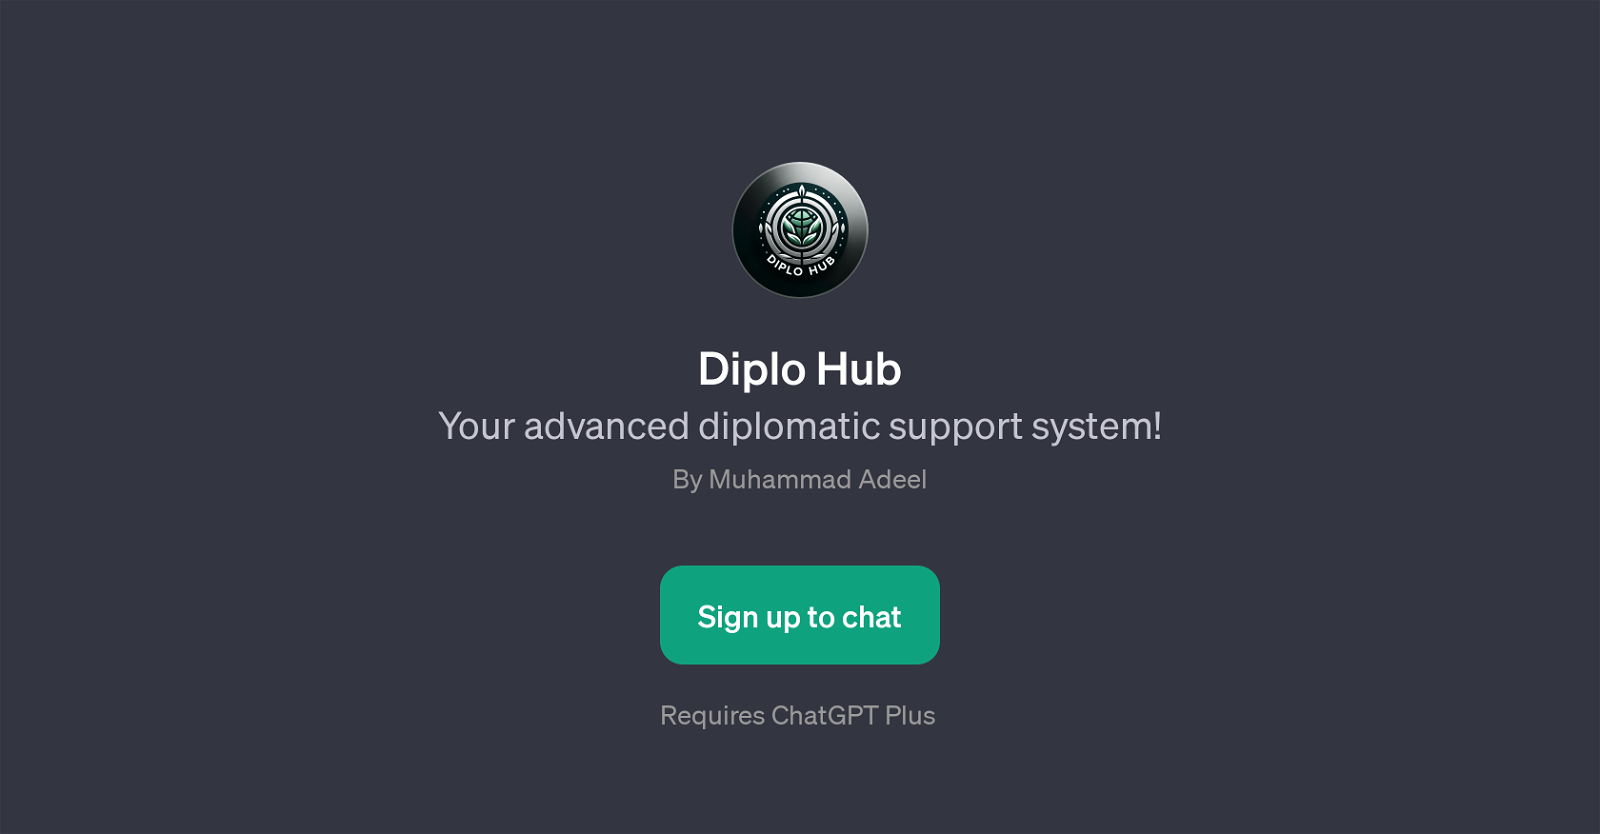 Diplo Hub website